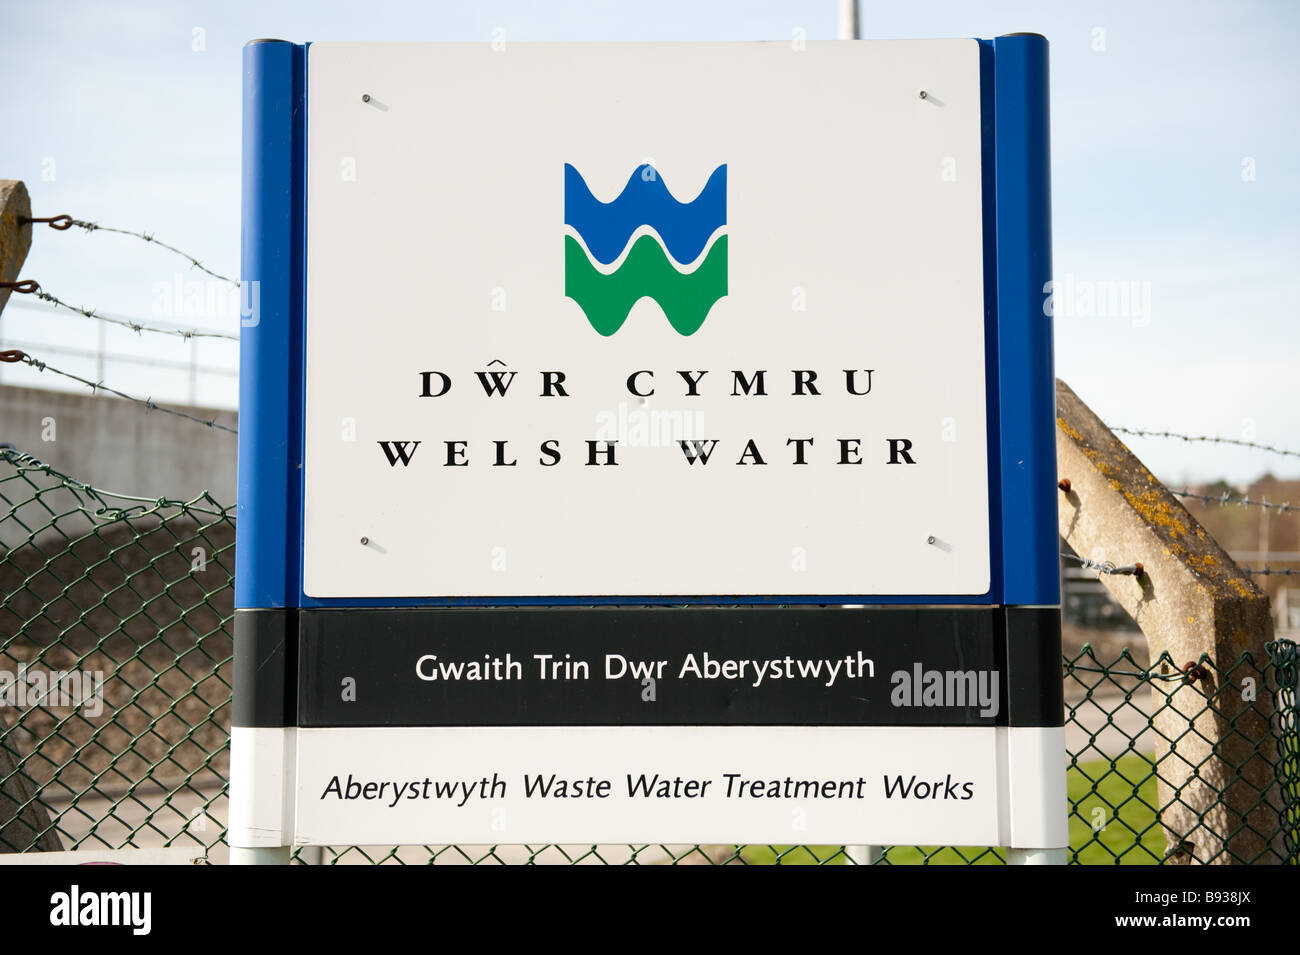 Una edición bilingüe inglés galés Welsh Water Dwr Cymru firmar en obras de tratamiento de aguas residuales de Aberystwyth, Gales, Reino Unido Foto de stock